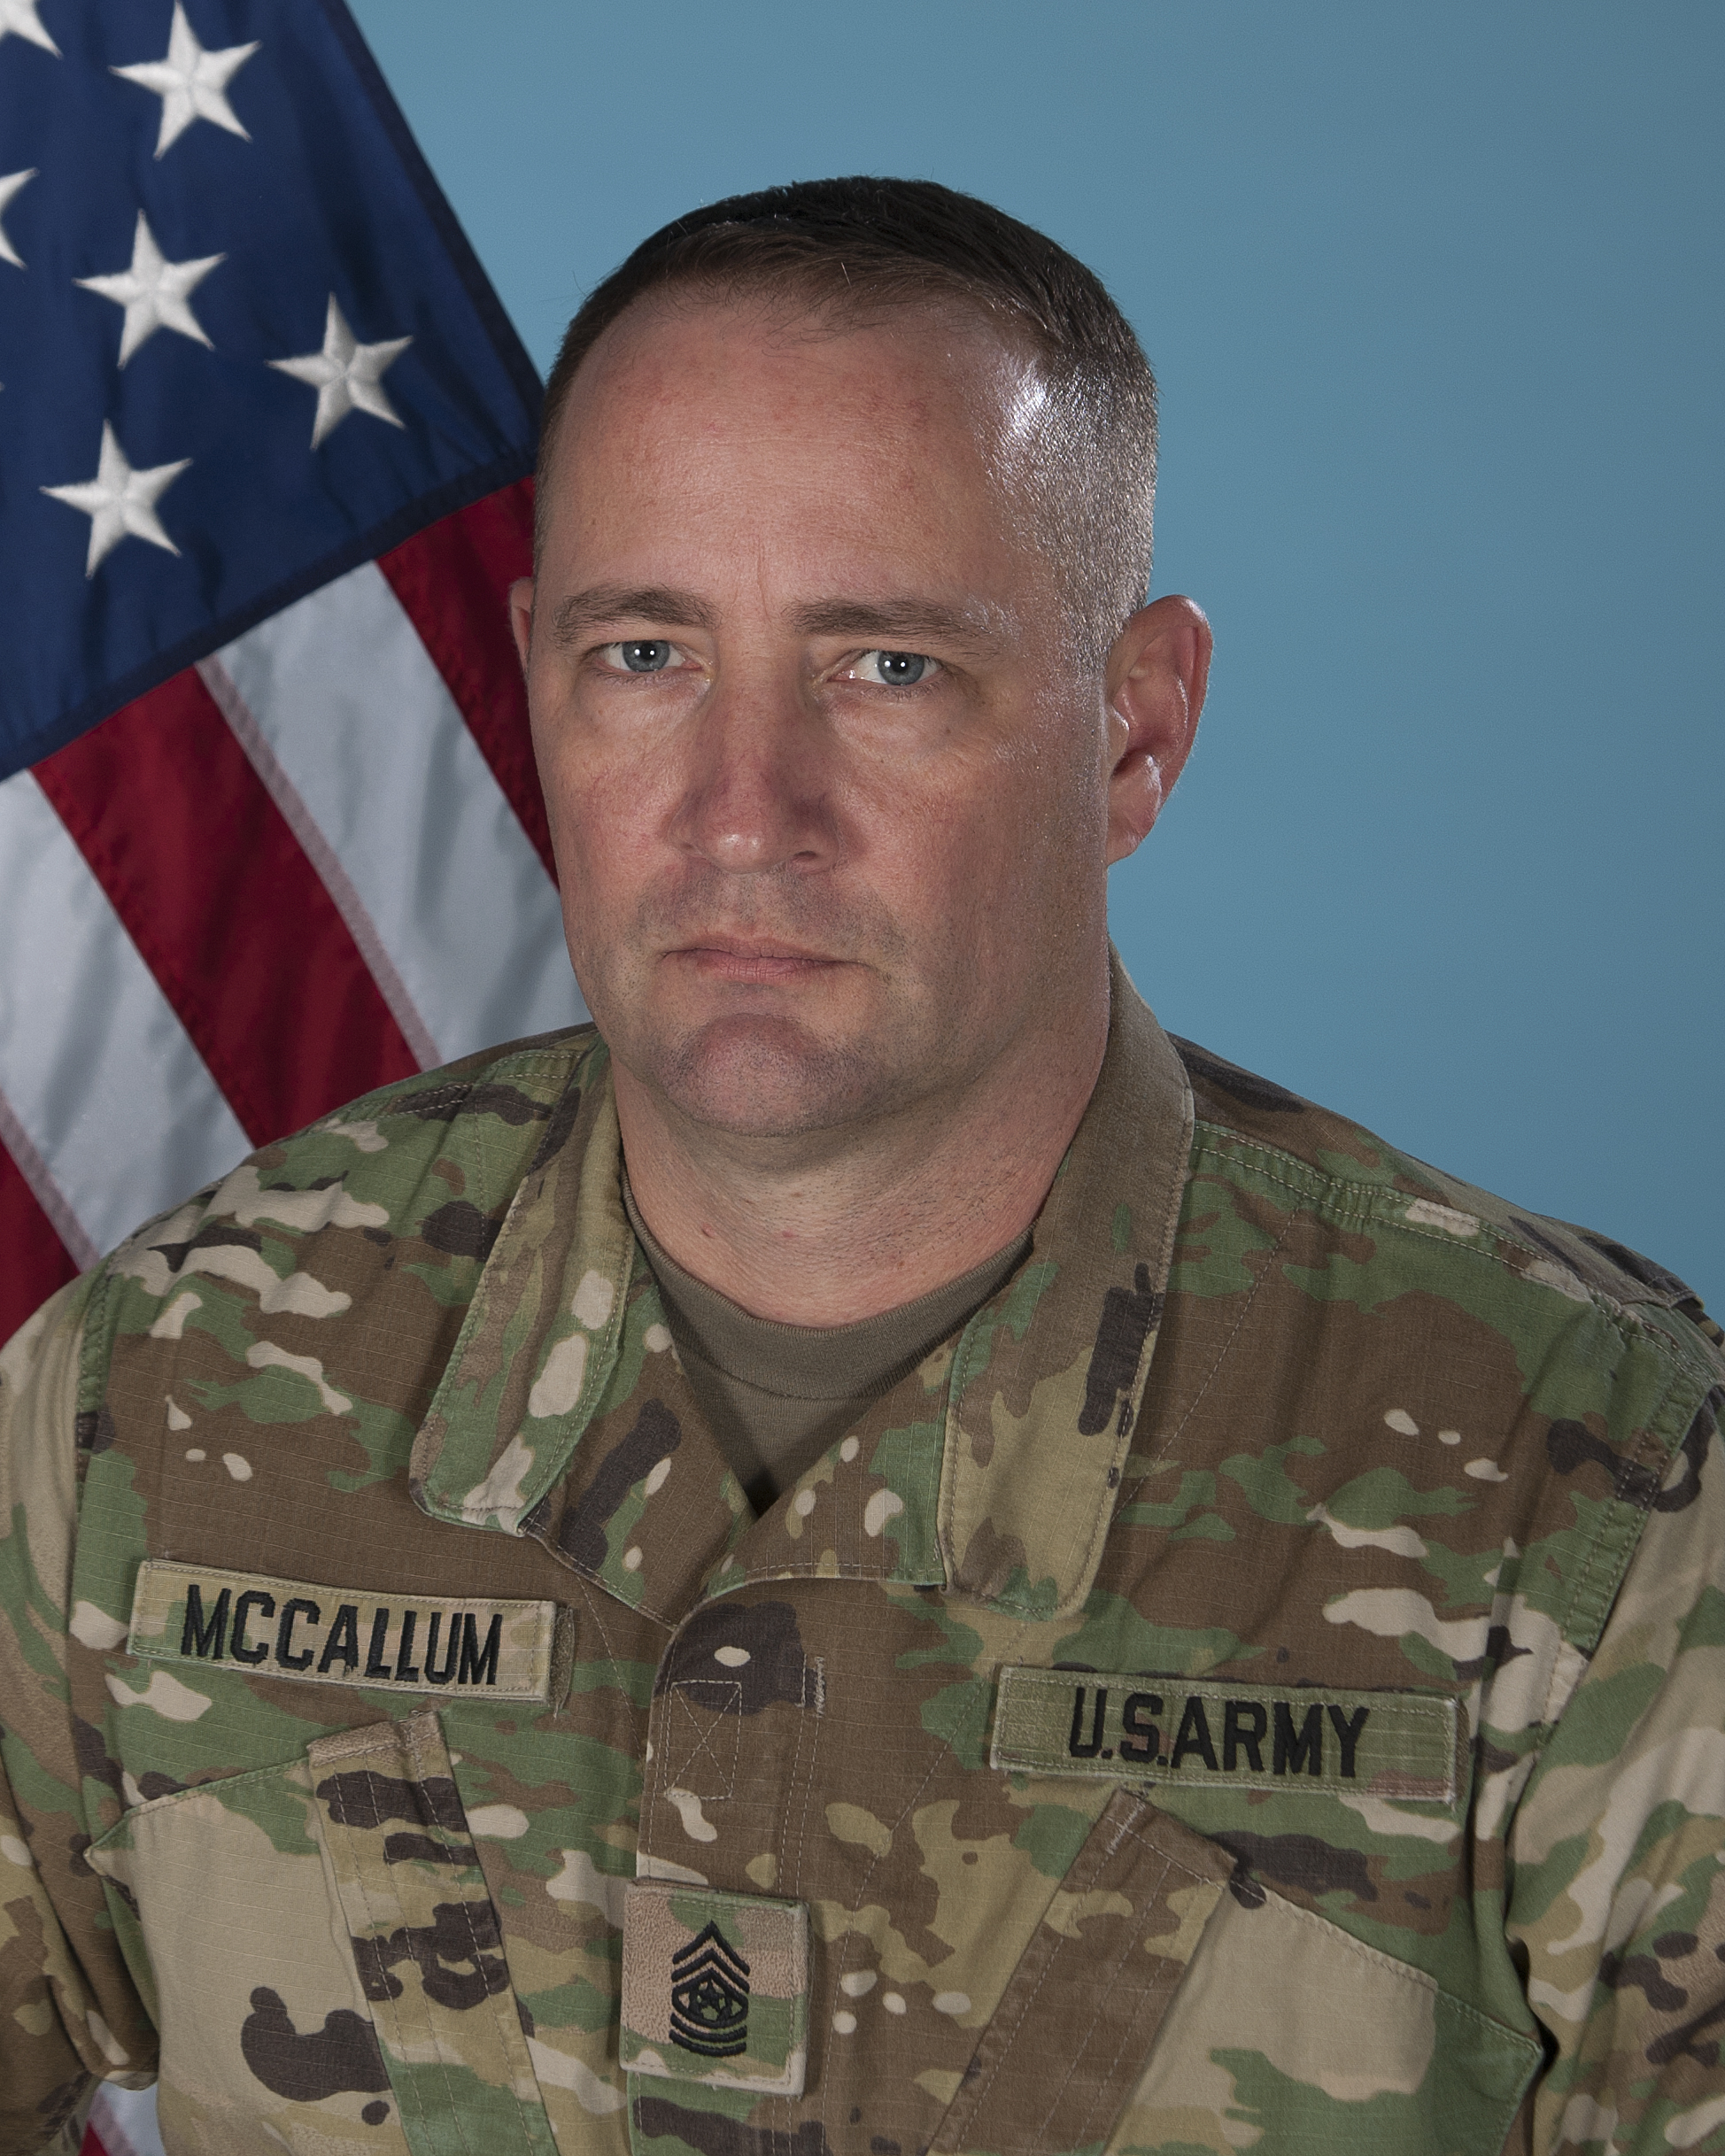 Command Sergeant Major - CSM Travis McCallum